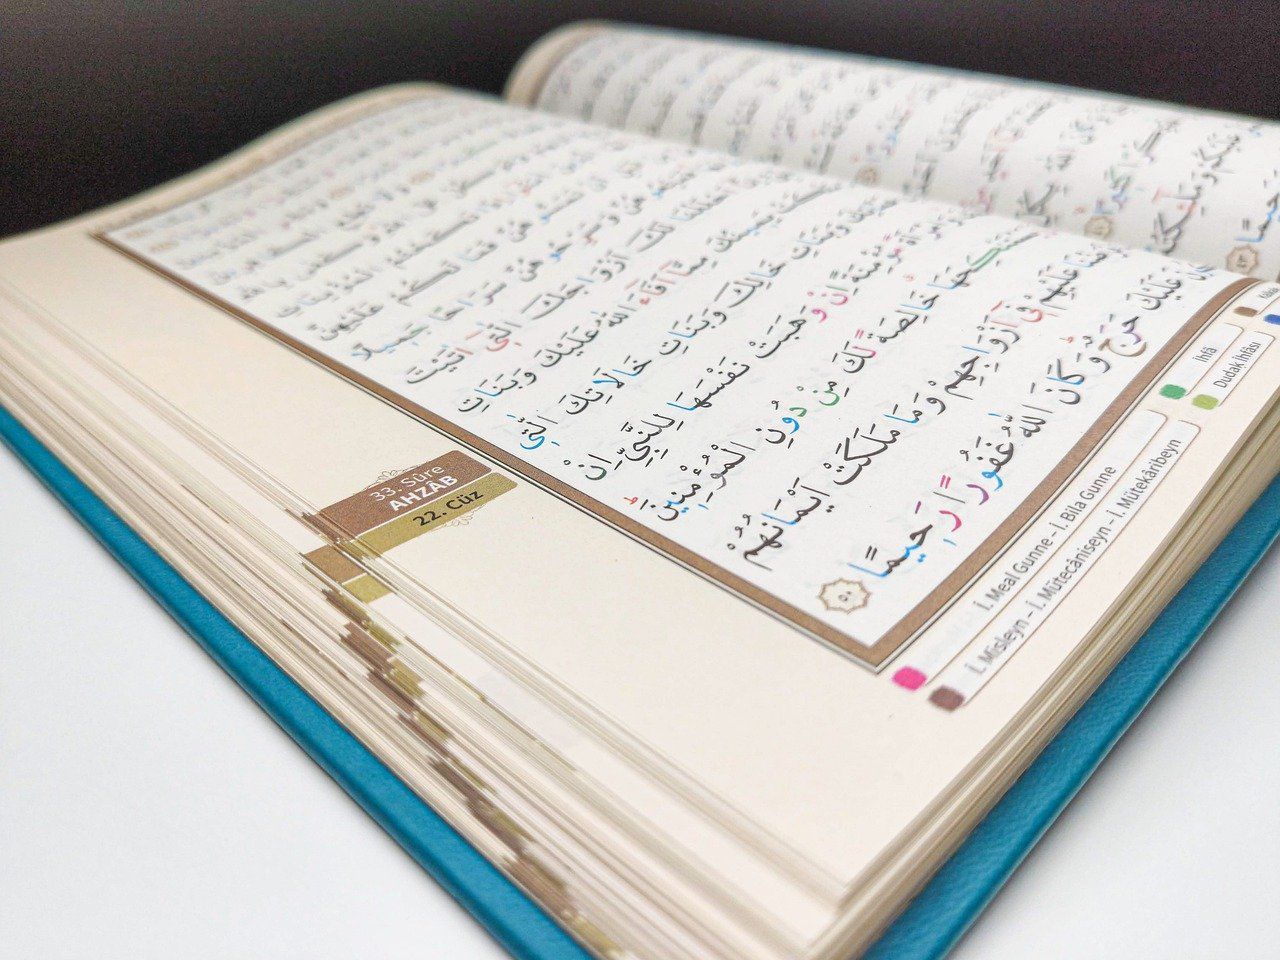 Jumlah ayat dalam al quran